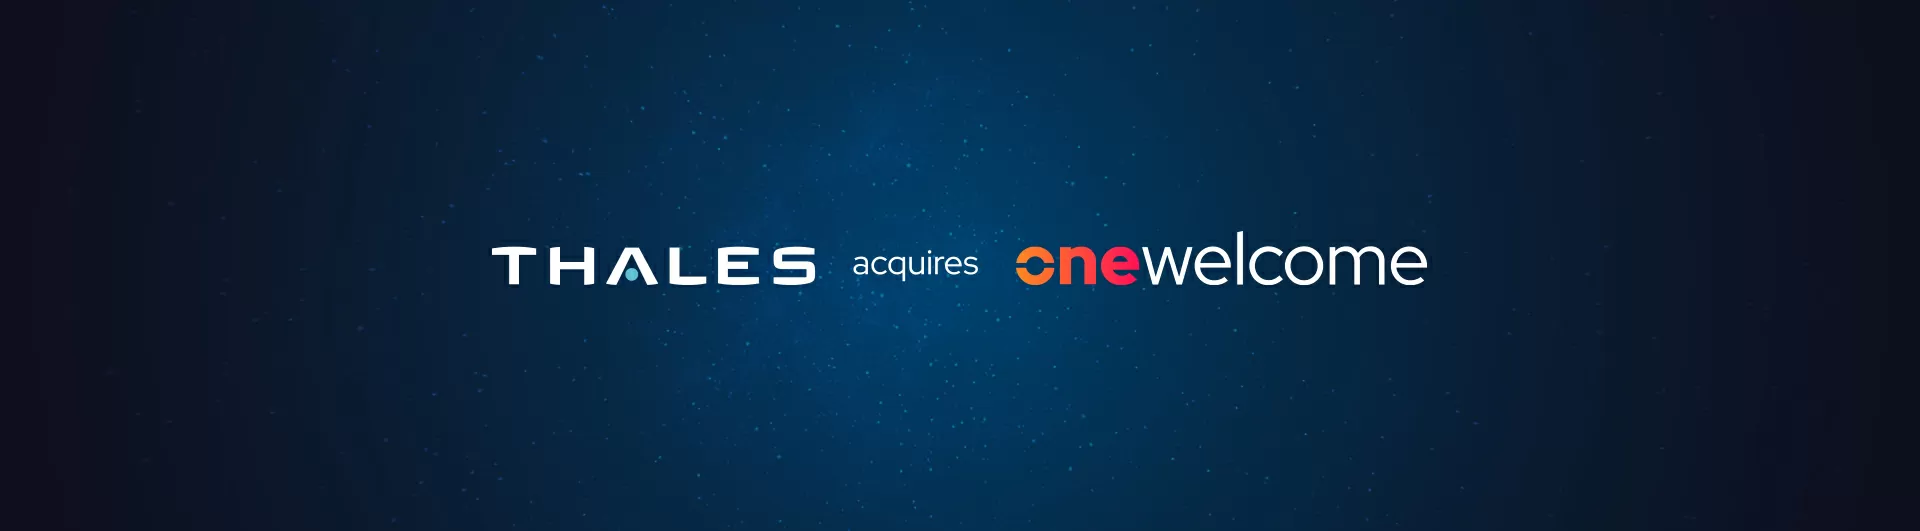 Thales velocizza ulteriormente il suo sviluppo della sicurezza informatica con l’acquisizione di OneWelcome, leader nella gestione delle identità e degli accessi dei clienti